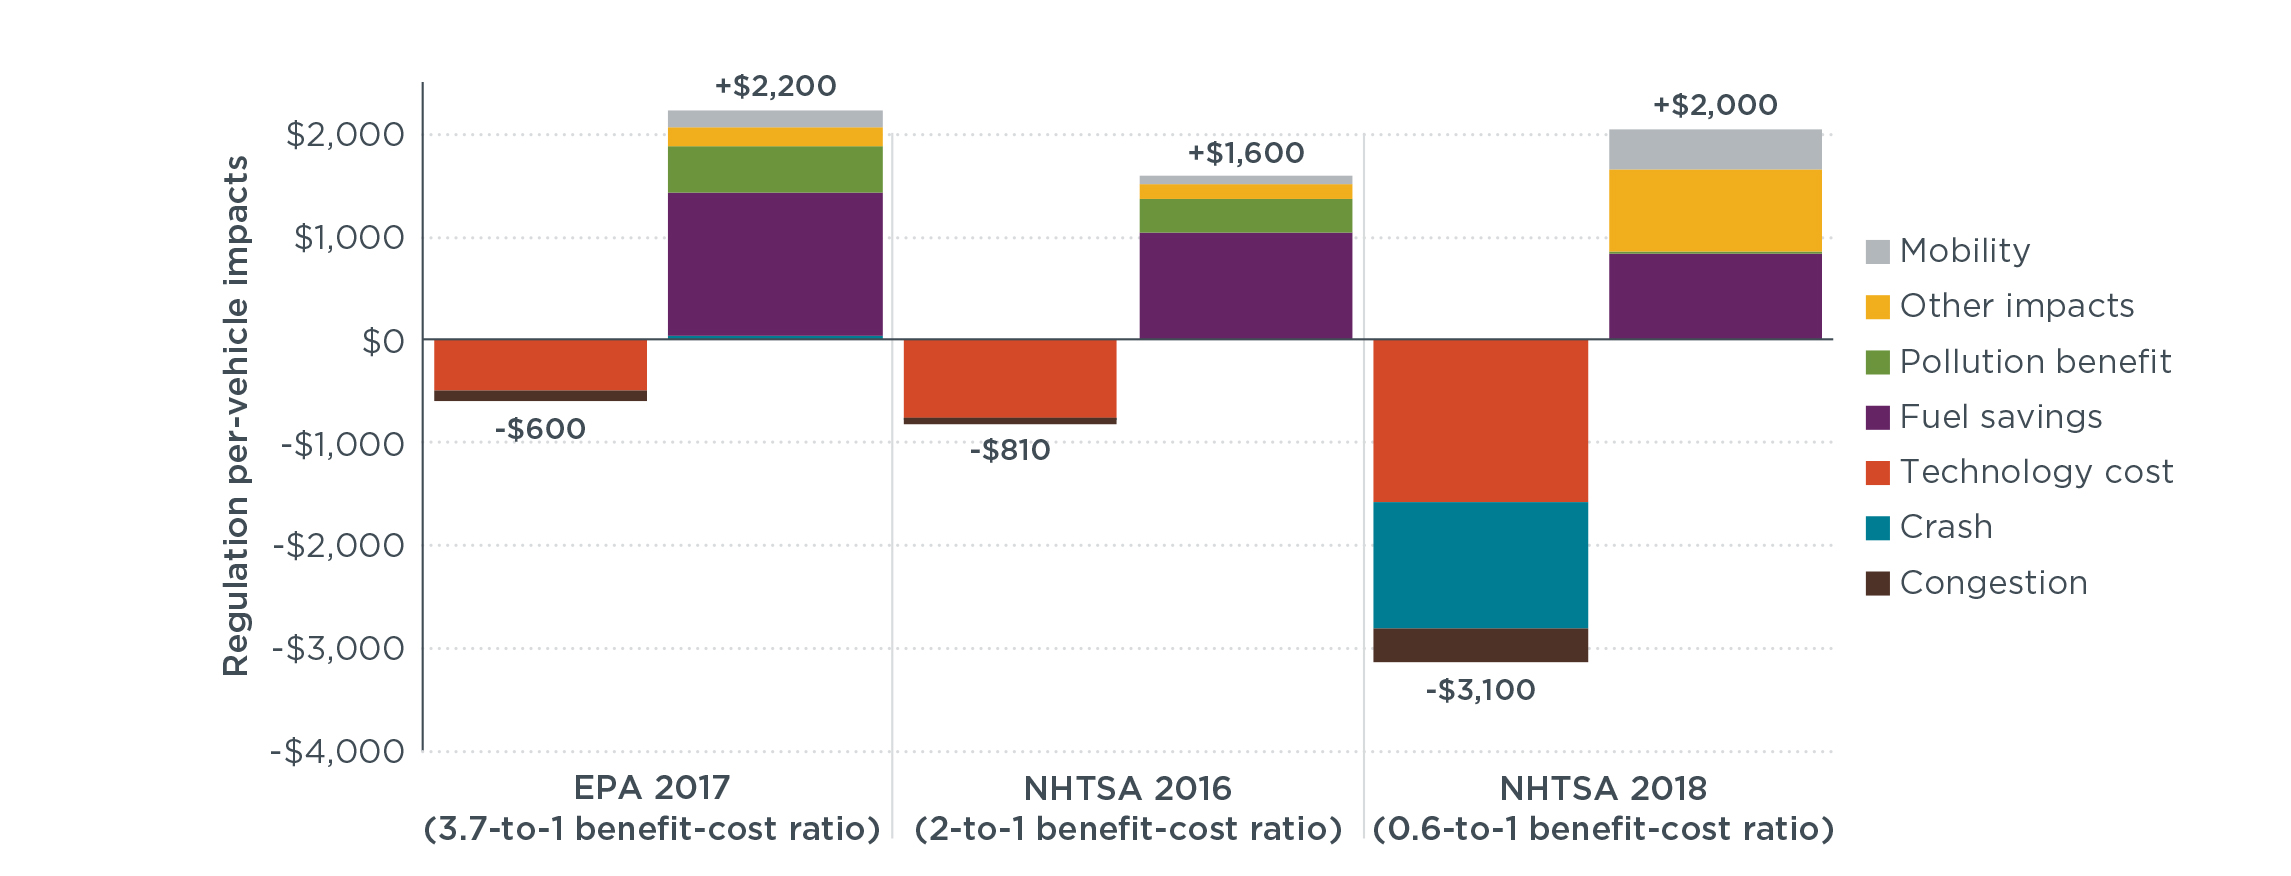 U.S. fuel economy and GHG regulation impact estimates, per vehicle